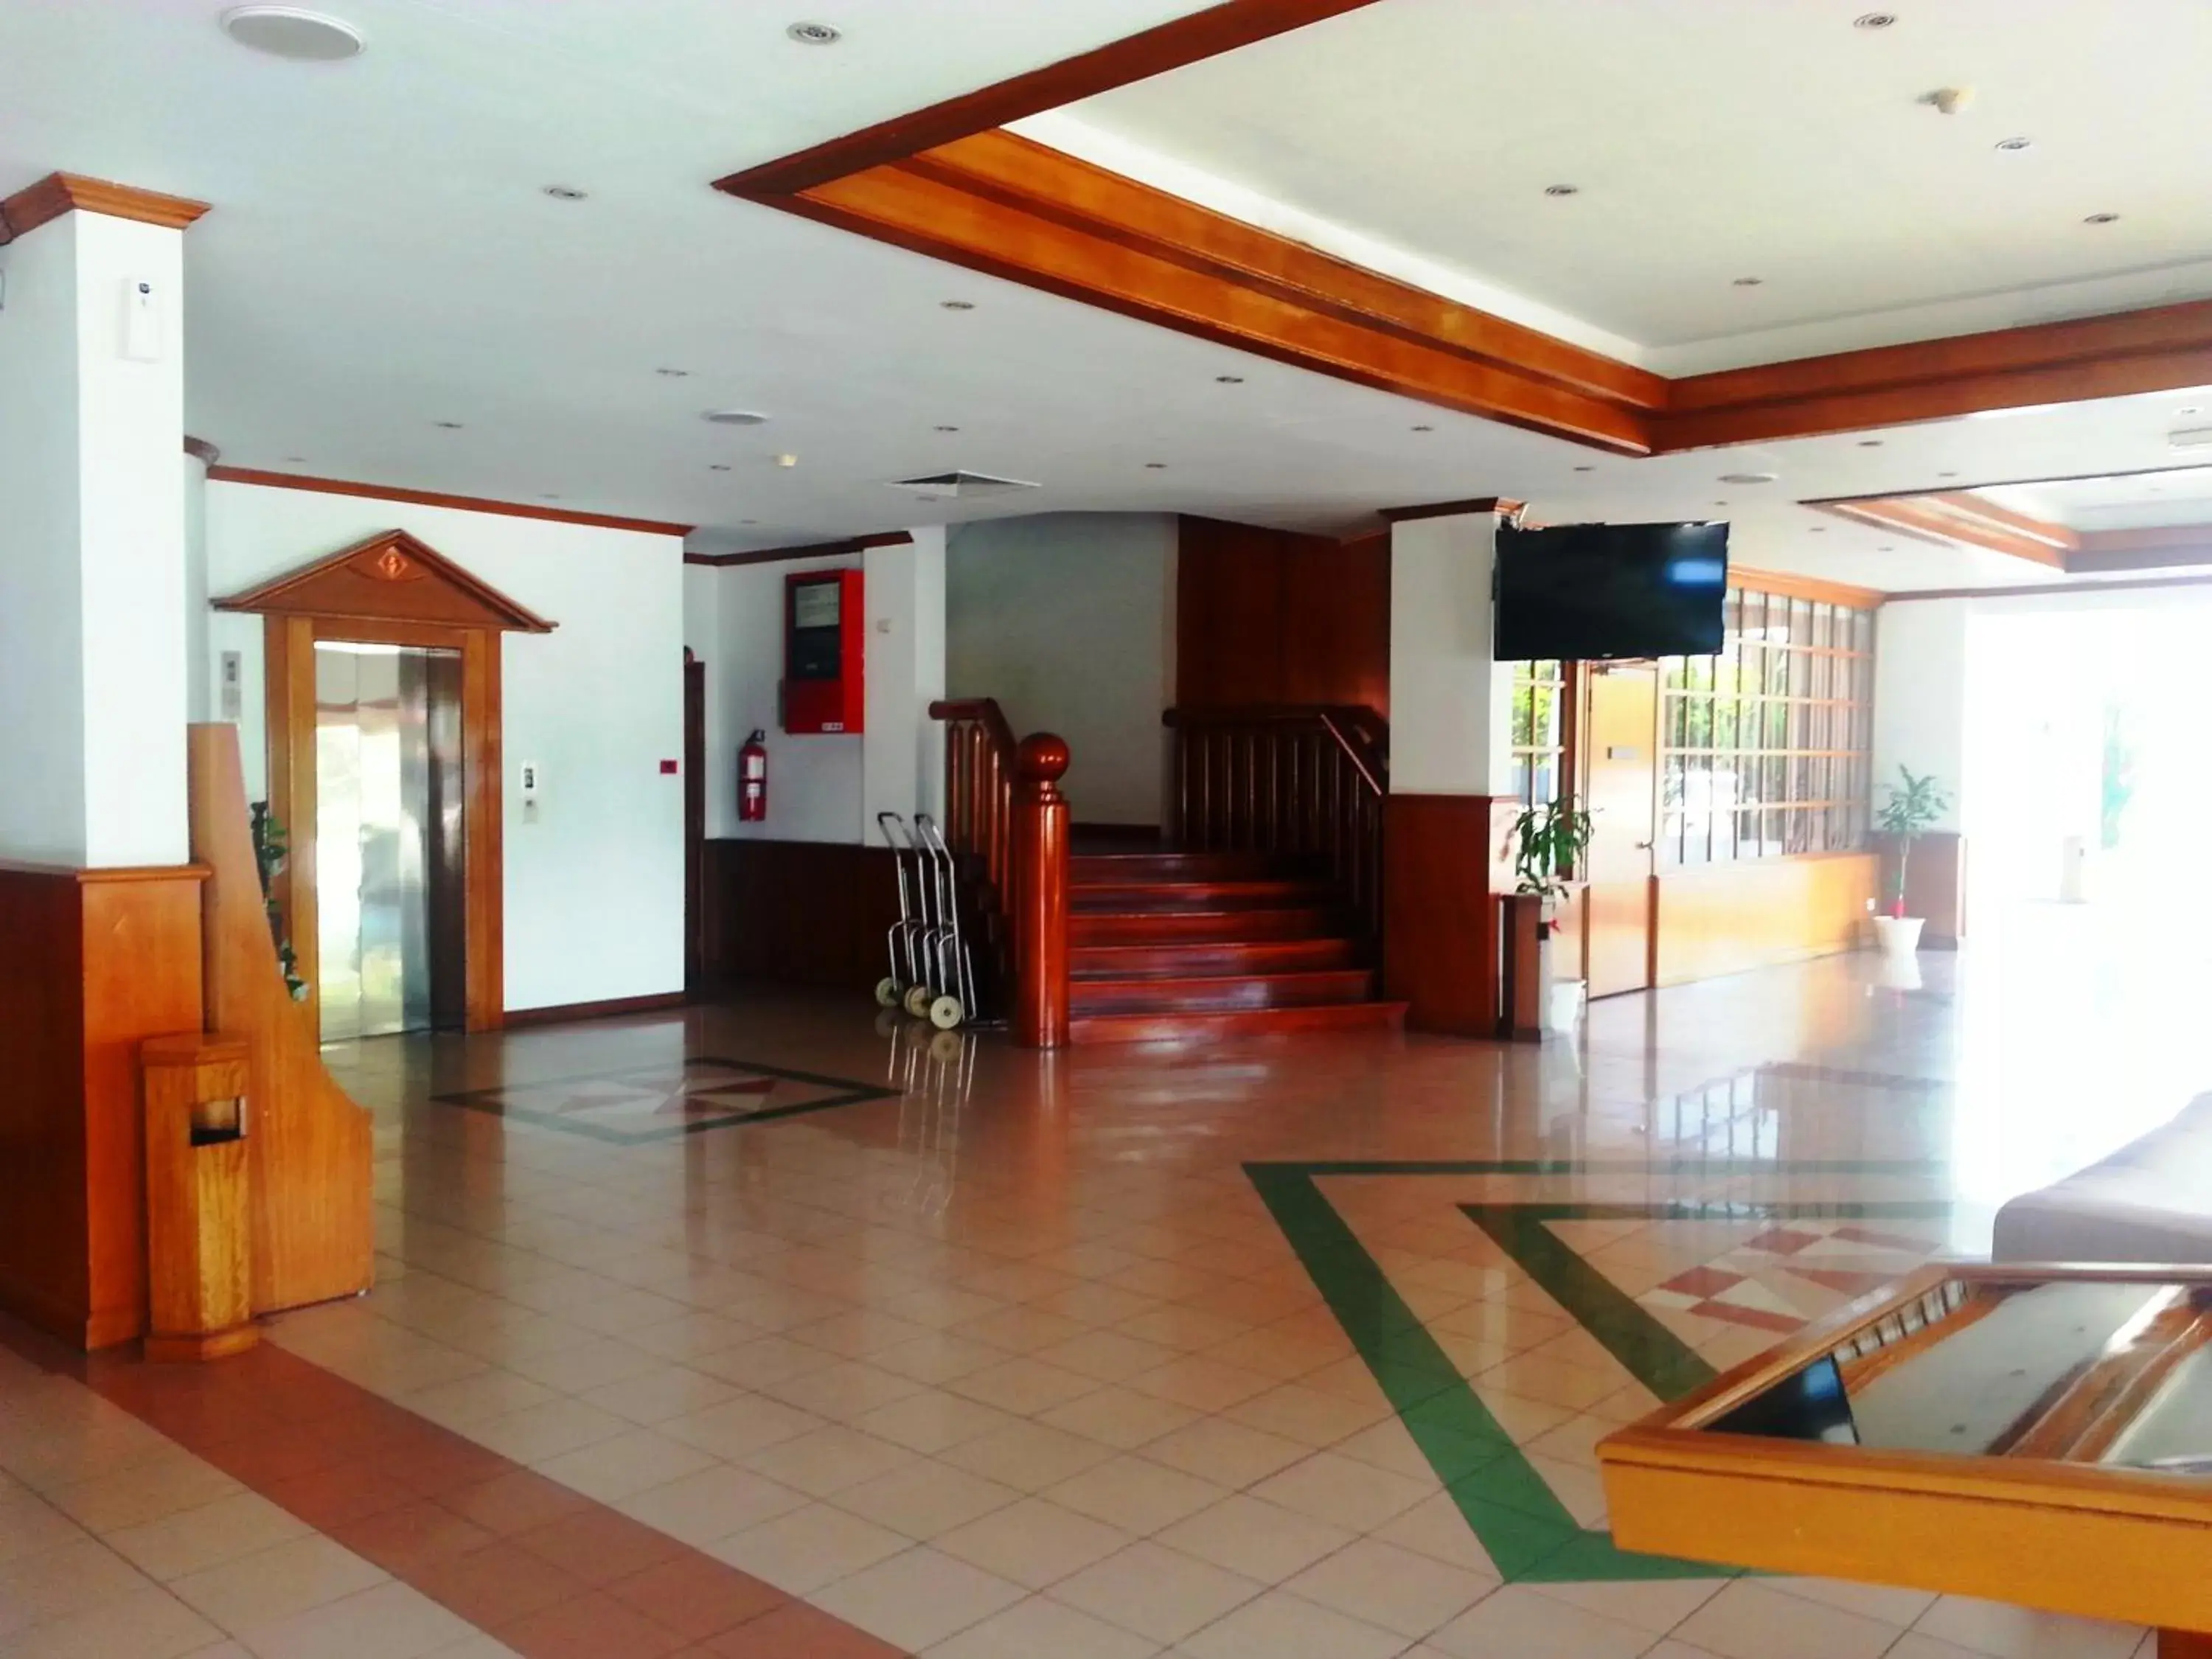 Lobby or reception, Lobby/Reception in Sanbay Hotel